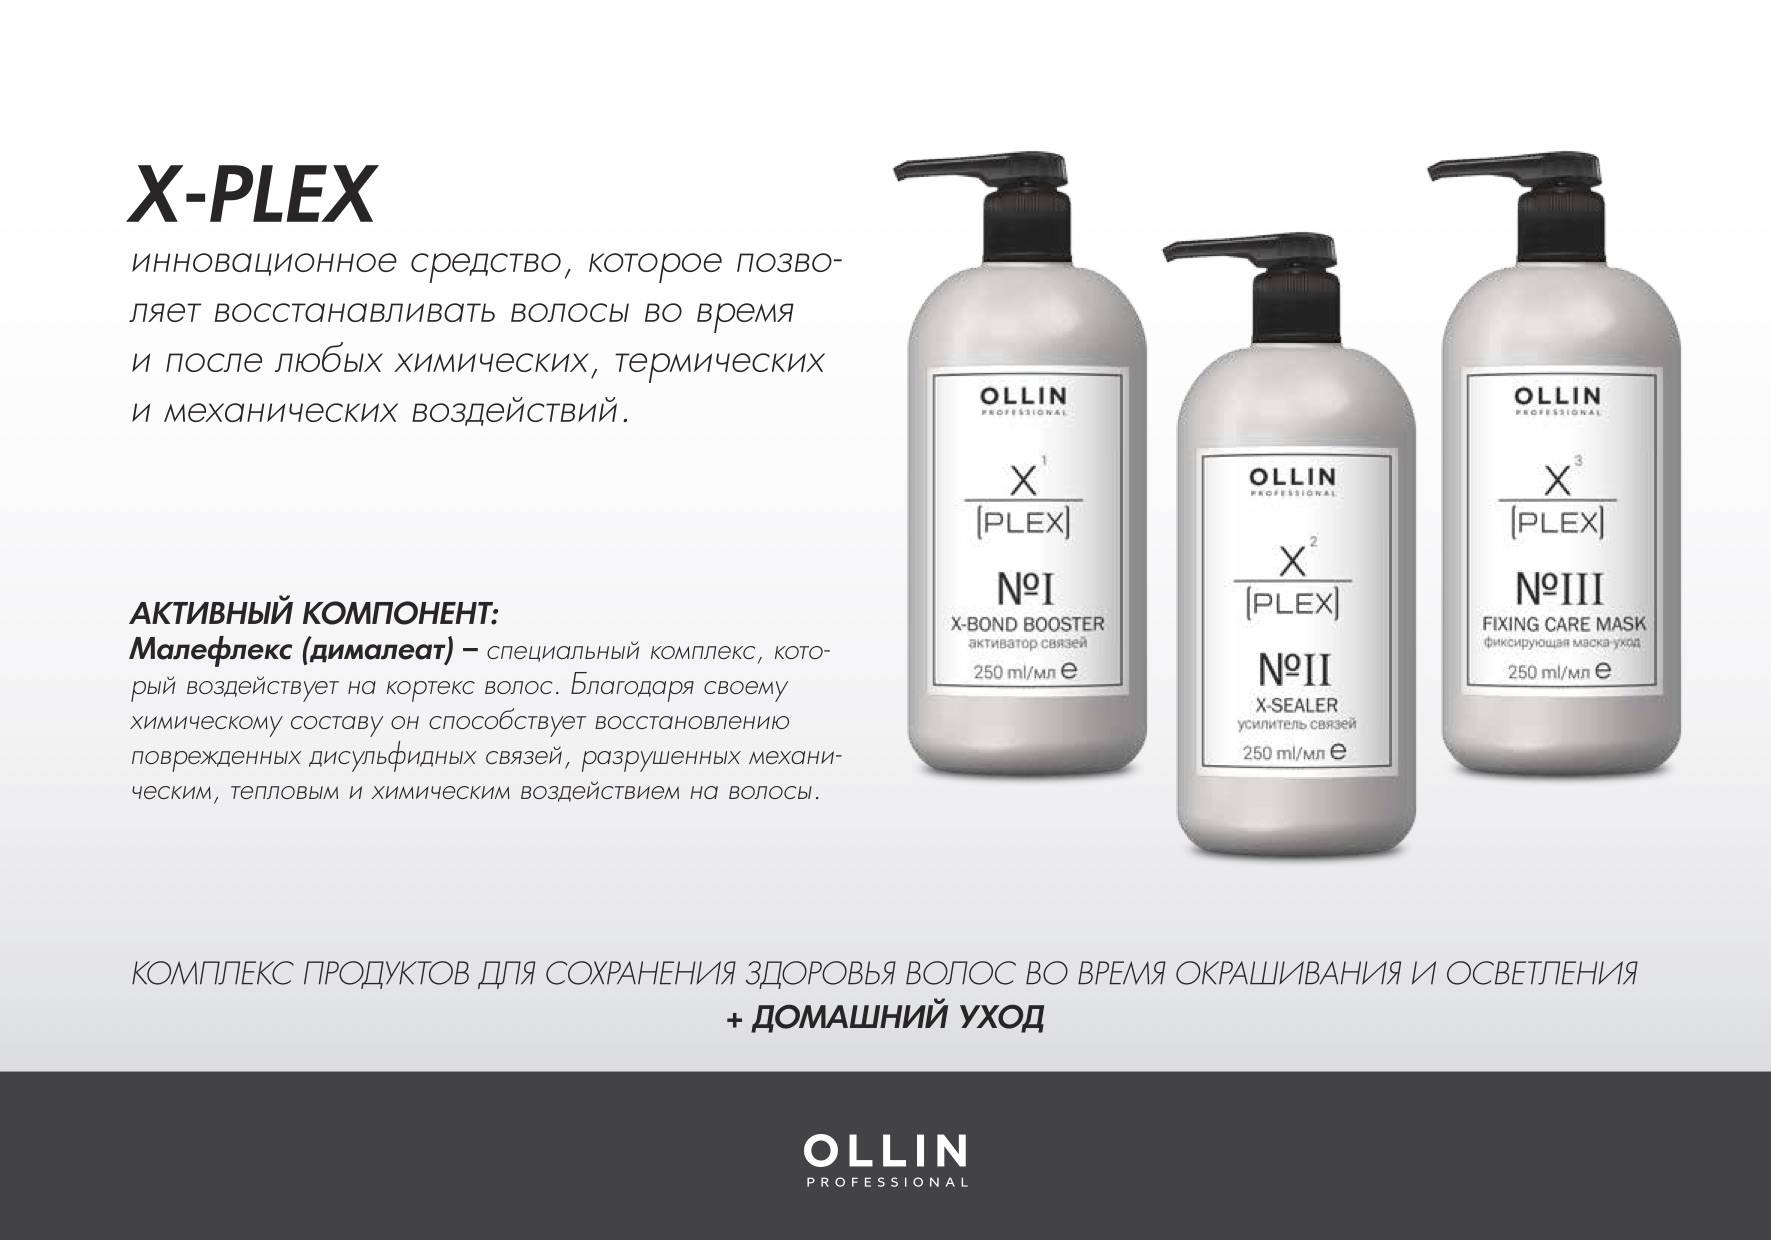 Защита и восстановление волос. Ollin x-Plex набор. Plex Ollin для волос. Ollin, набор №1 (активатор связей 1х250 мл; усилитель связей 2х250 мл) x-Plex. Ollin professional x-Plex x-Sealer no2.